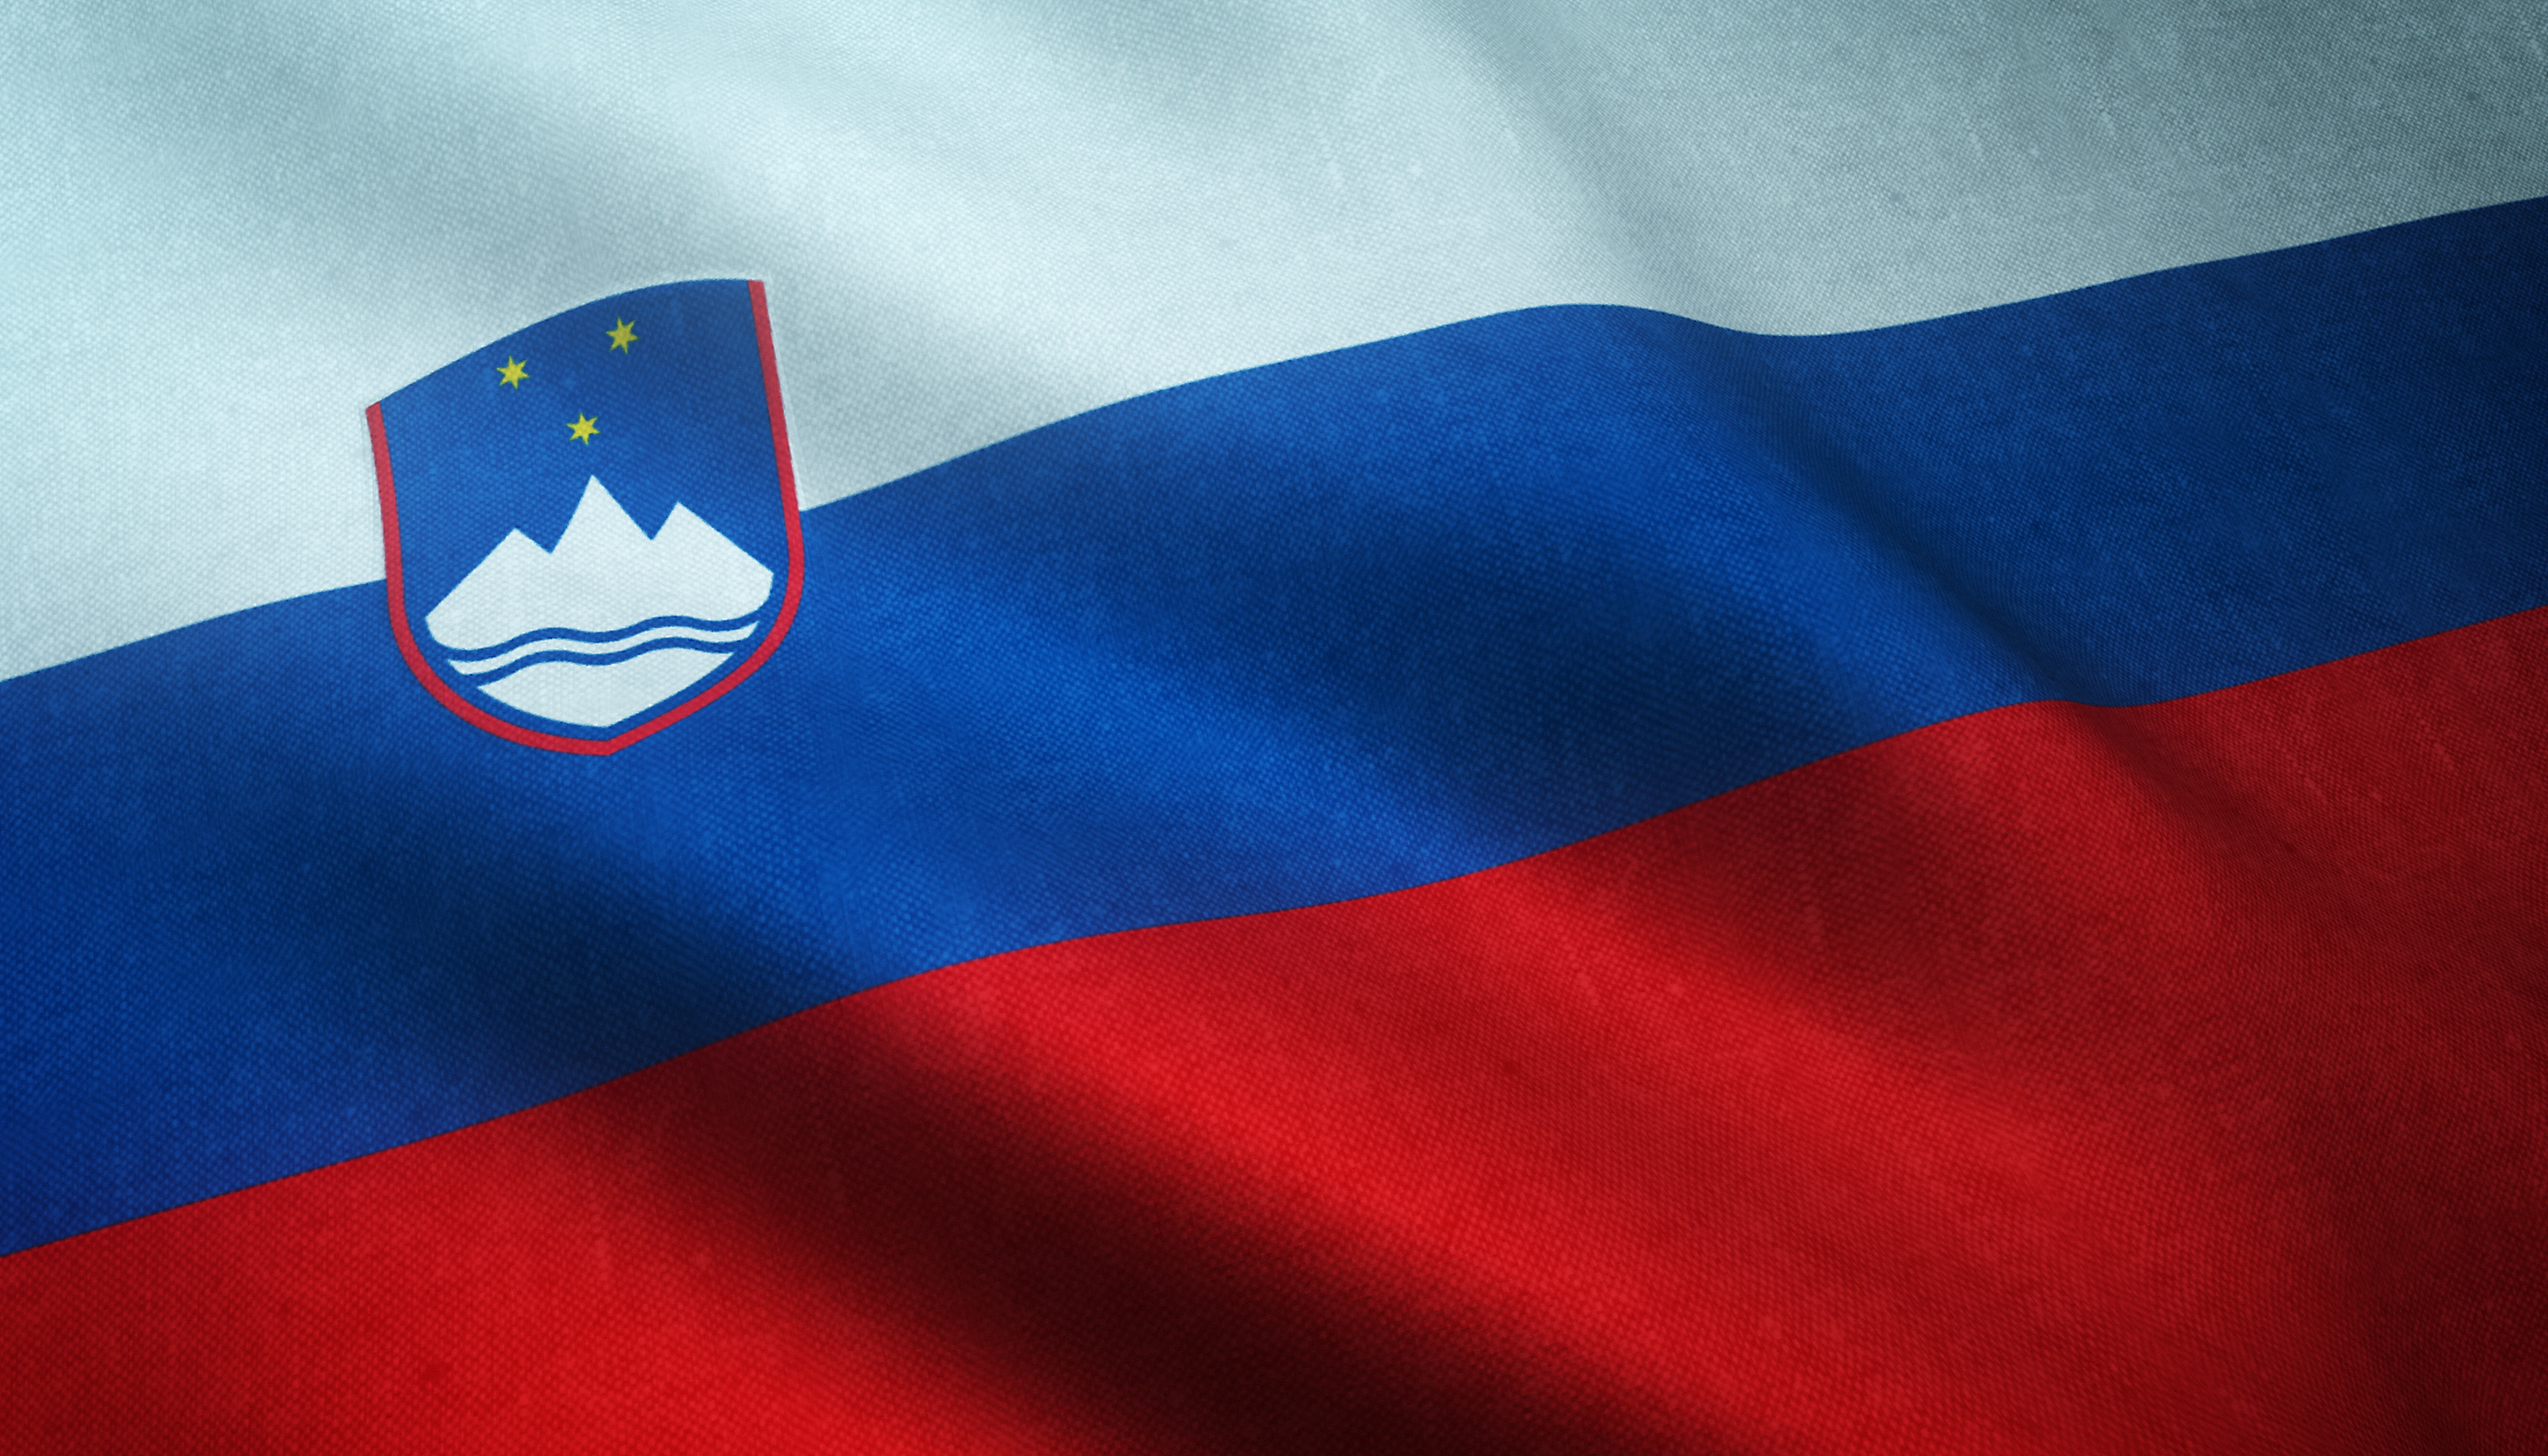 Praznovanje Dneva državnosti: Pogled v preteklost, sedanjost in prihodnost Slovenije